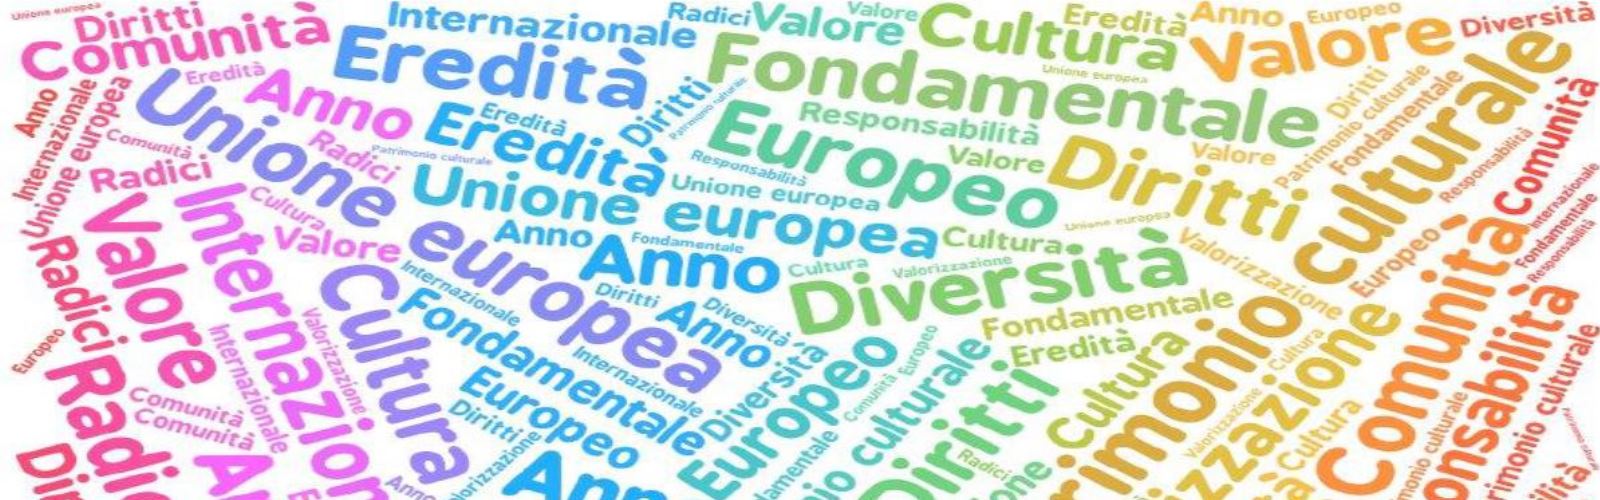 Il patrimonio culturale: valore fondamentale dell’Unione europea e della Comunità internazionale